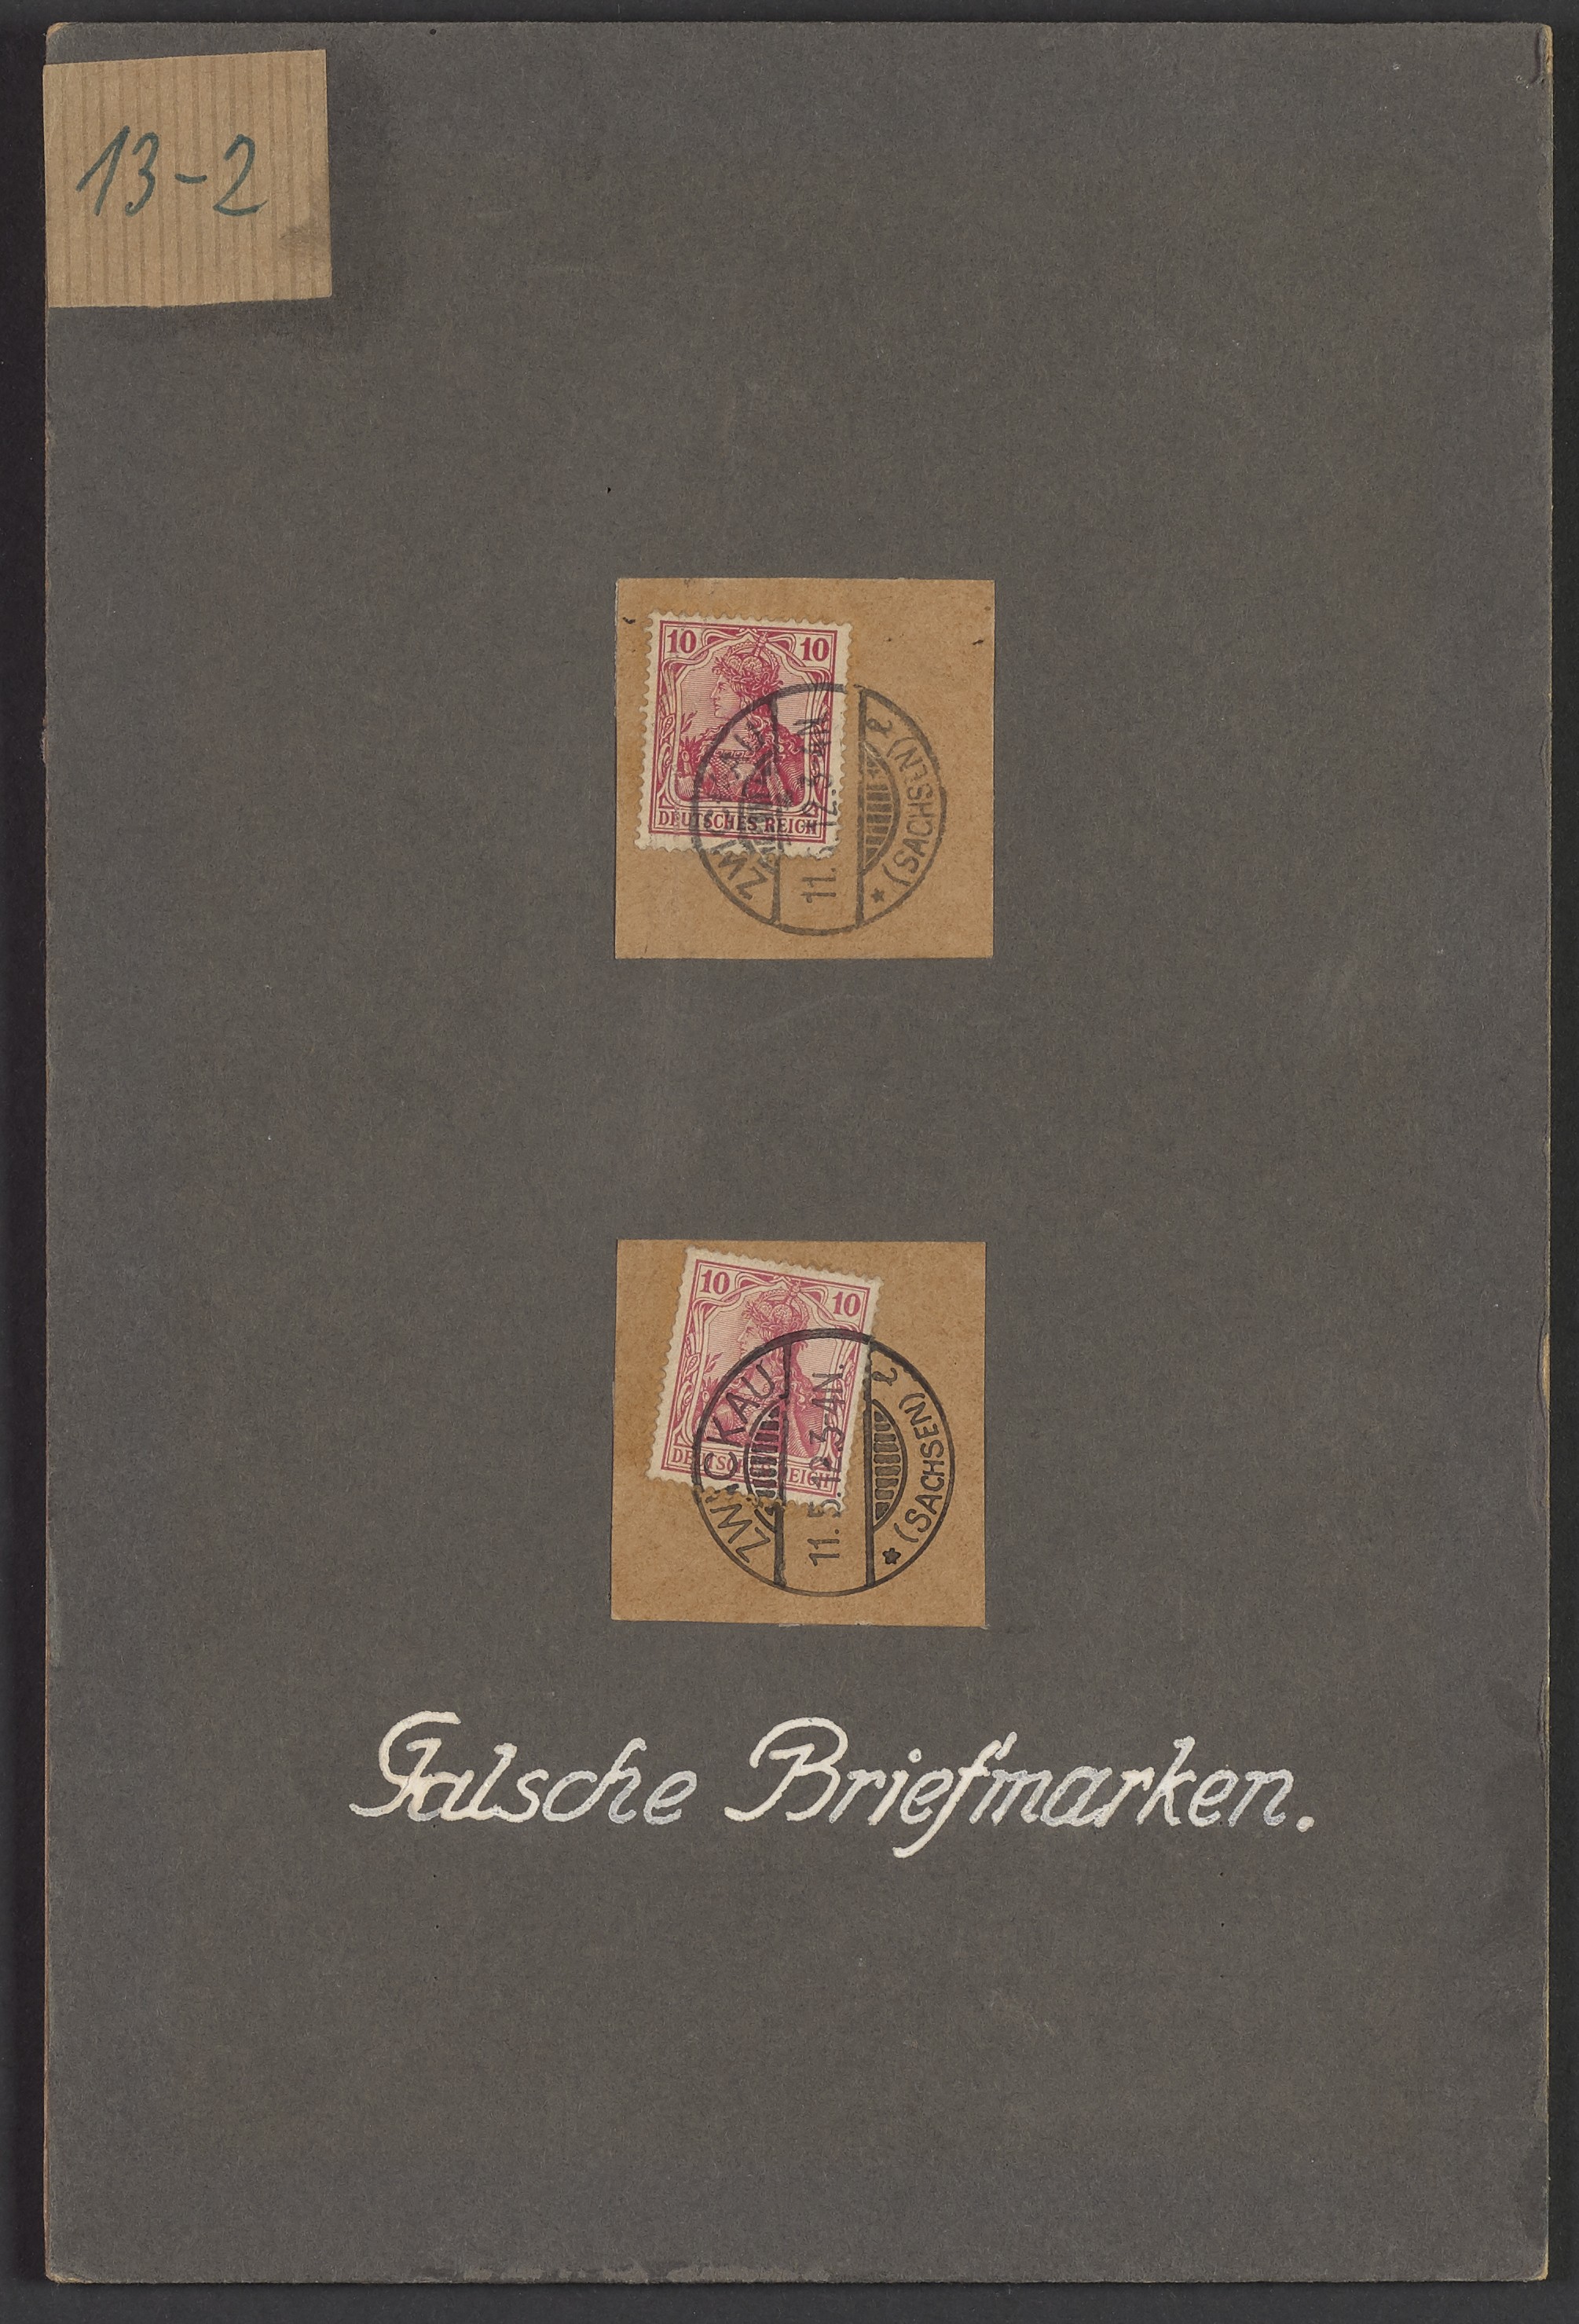 Lehrtafel "Falsche Briefmarken-10 RPfg" (Polizeidirektion Dresden  RR-F)